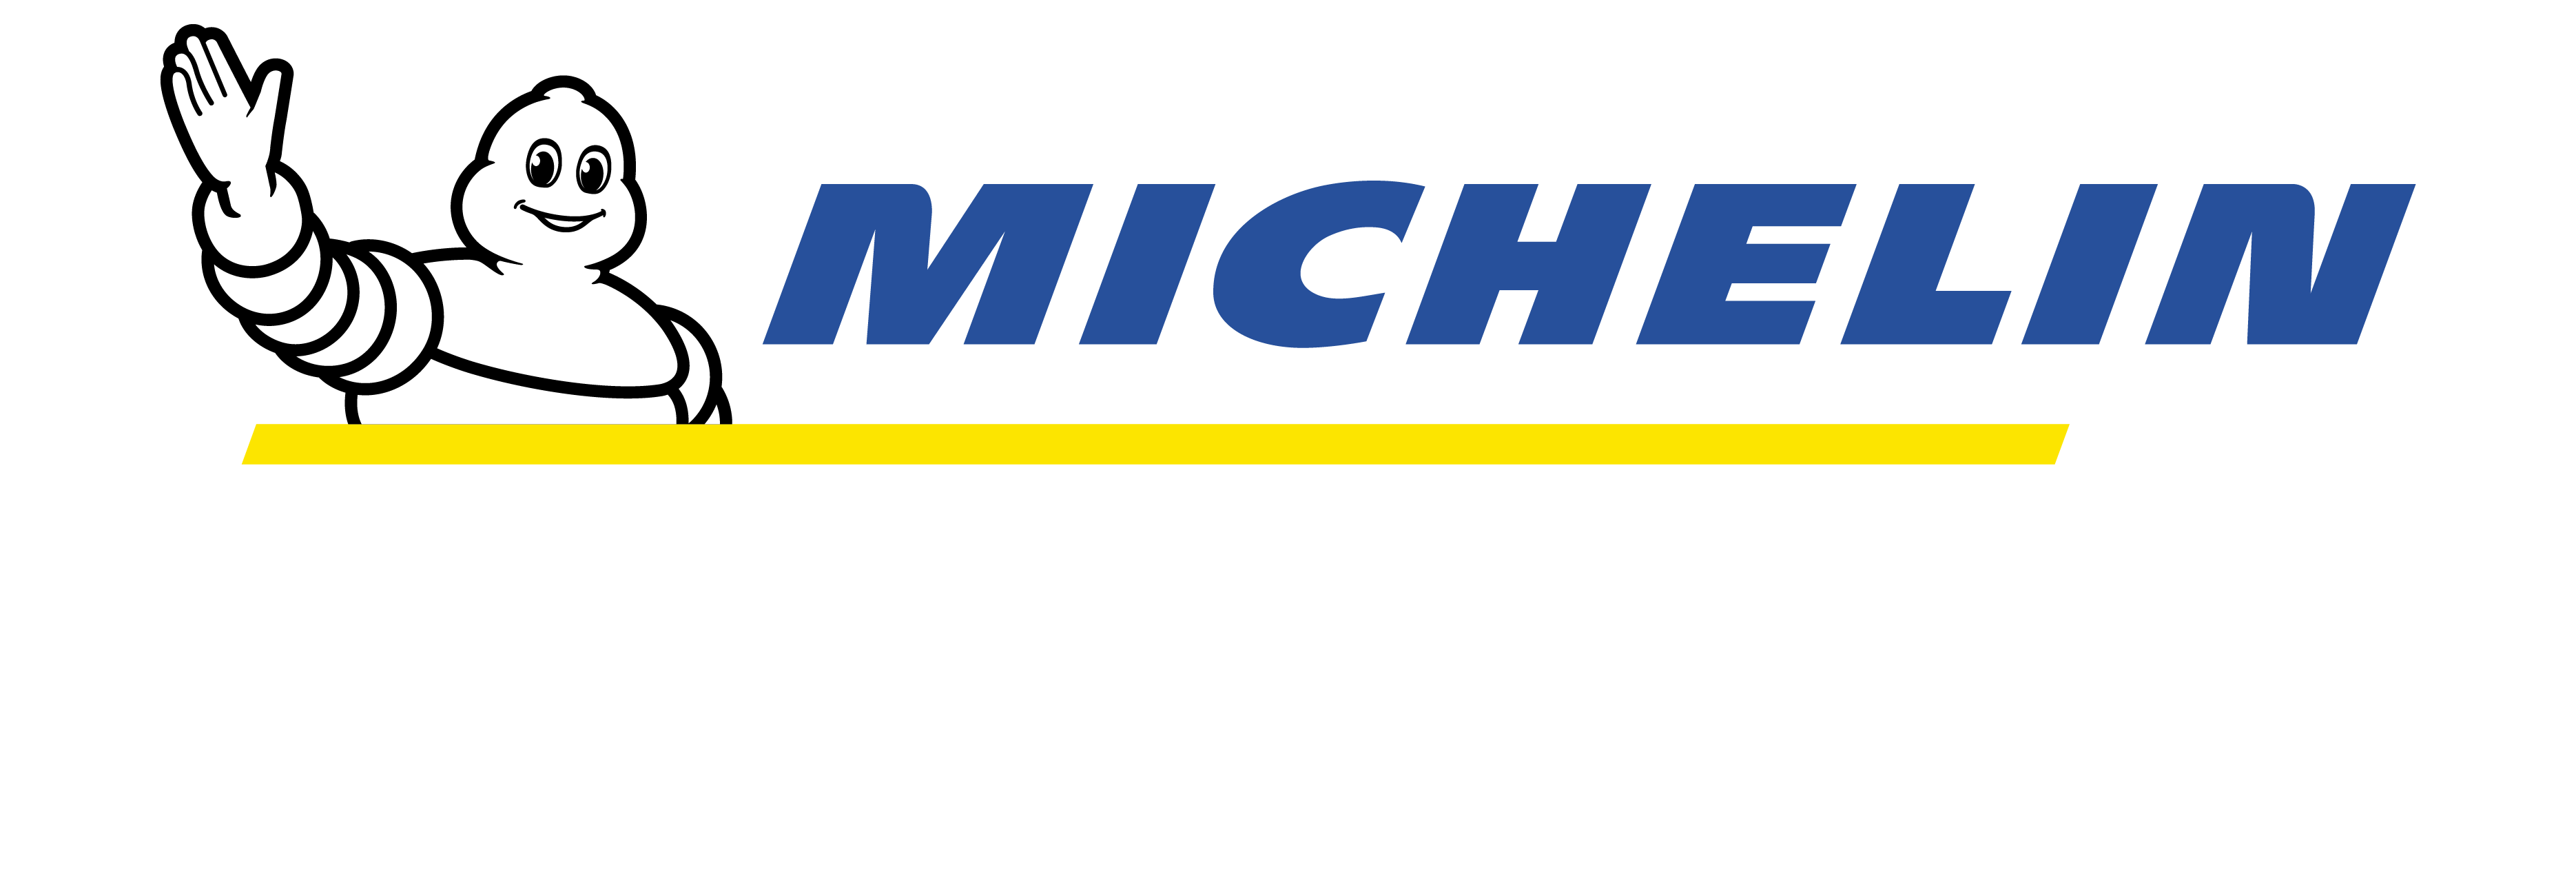 MICHELIN_LOGO1.png Michelin Logo